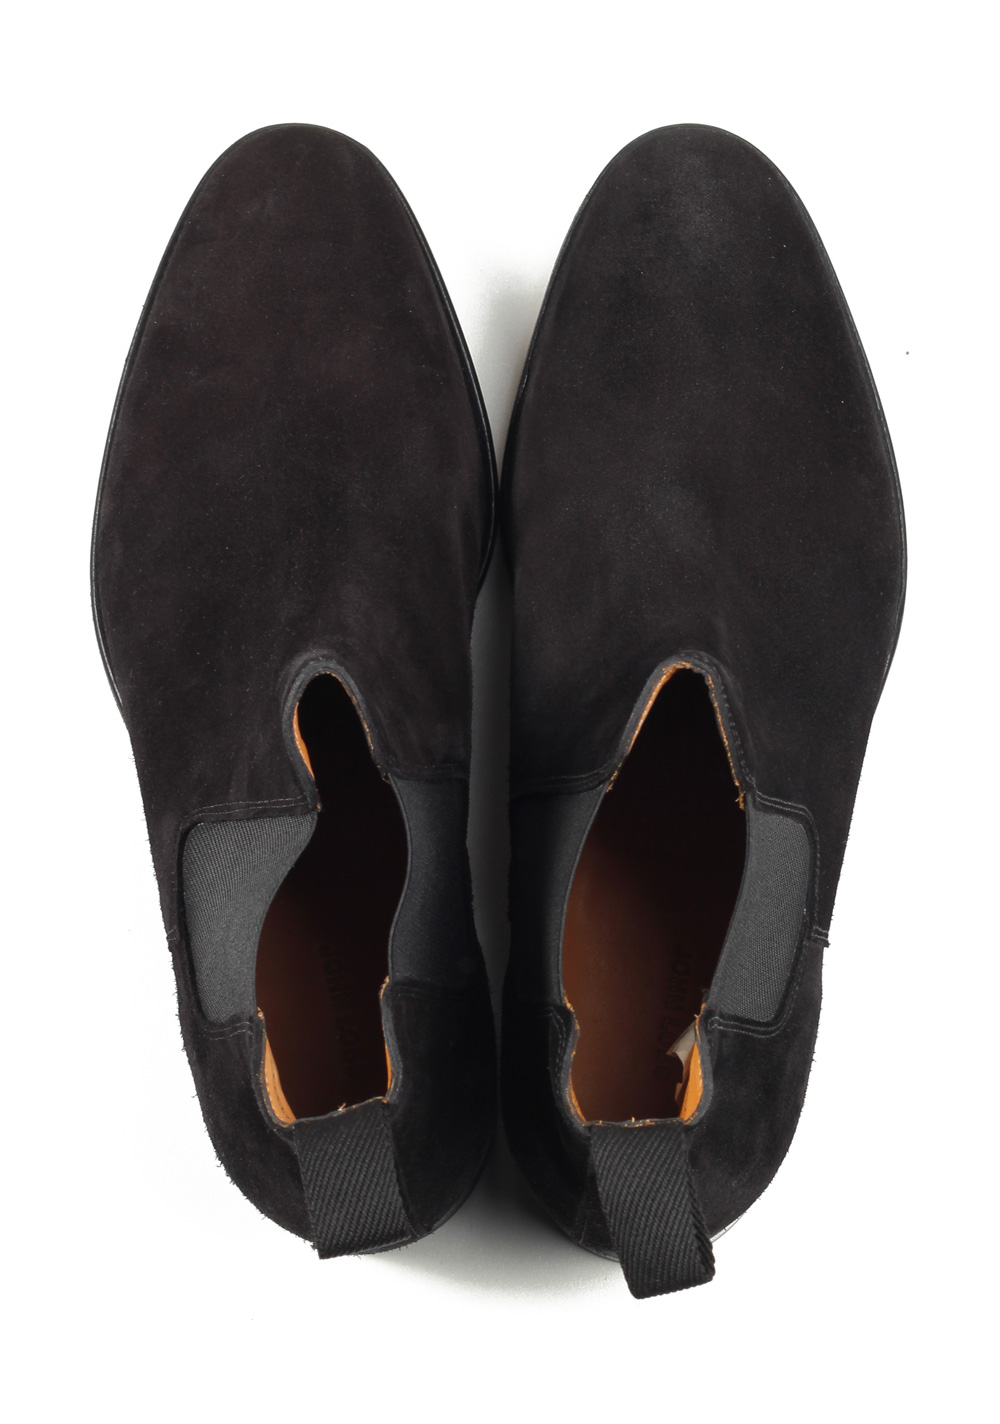 John Lobb Lawry Black Chelsea Boot Shoes Size 7 UK / 8 U.S. On 8695 Last | Costume Limité